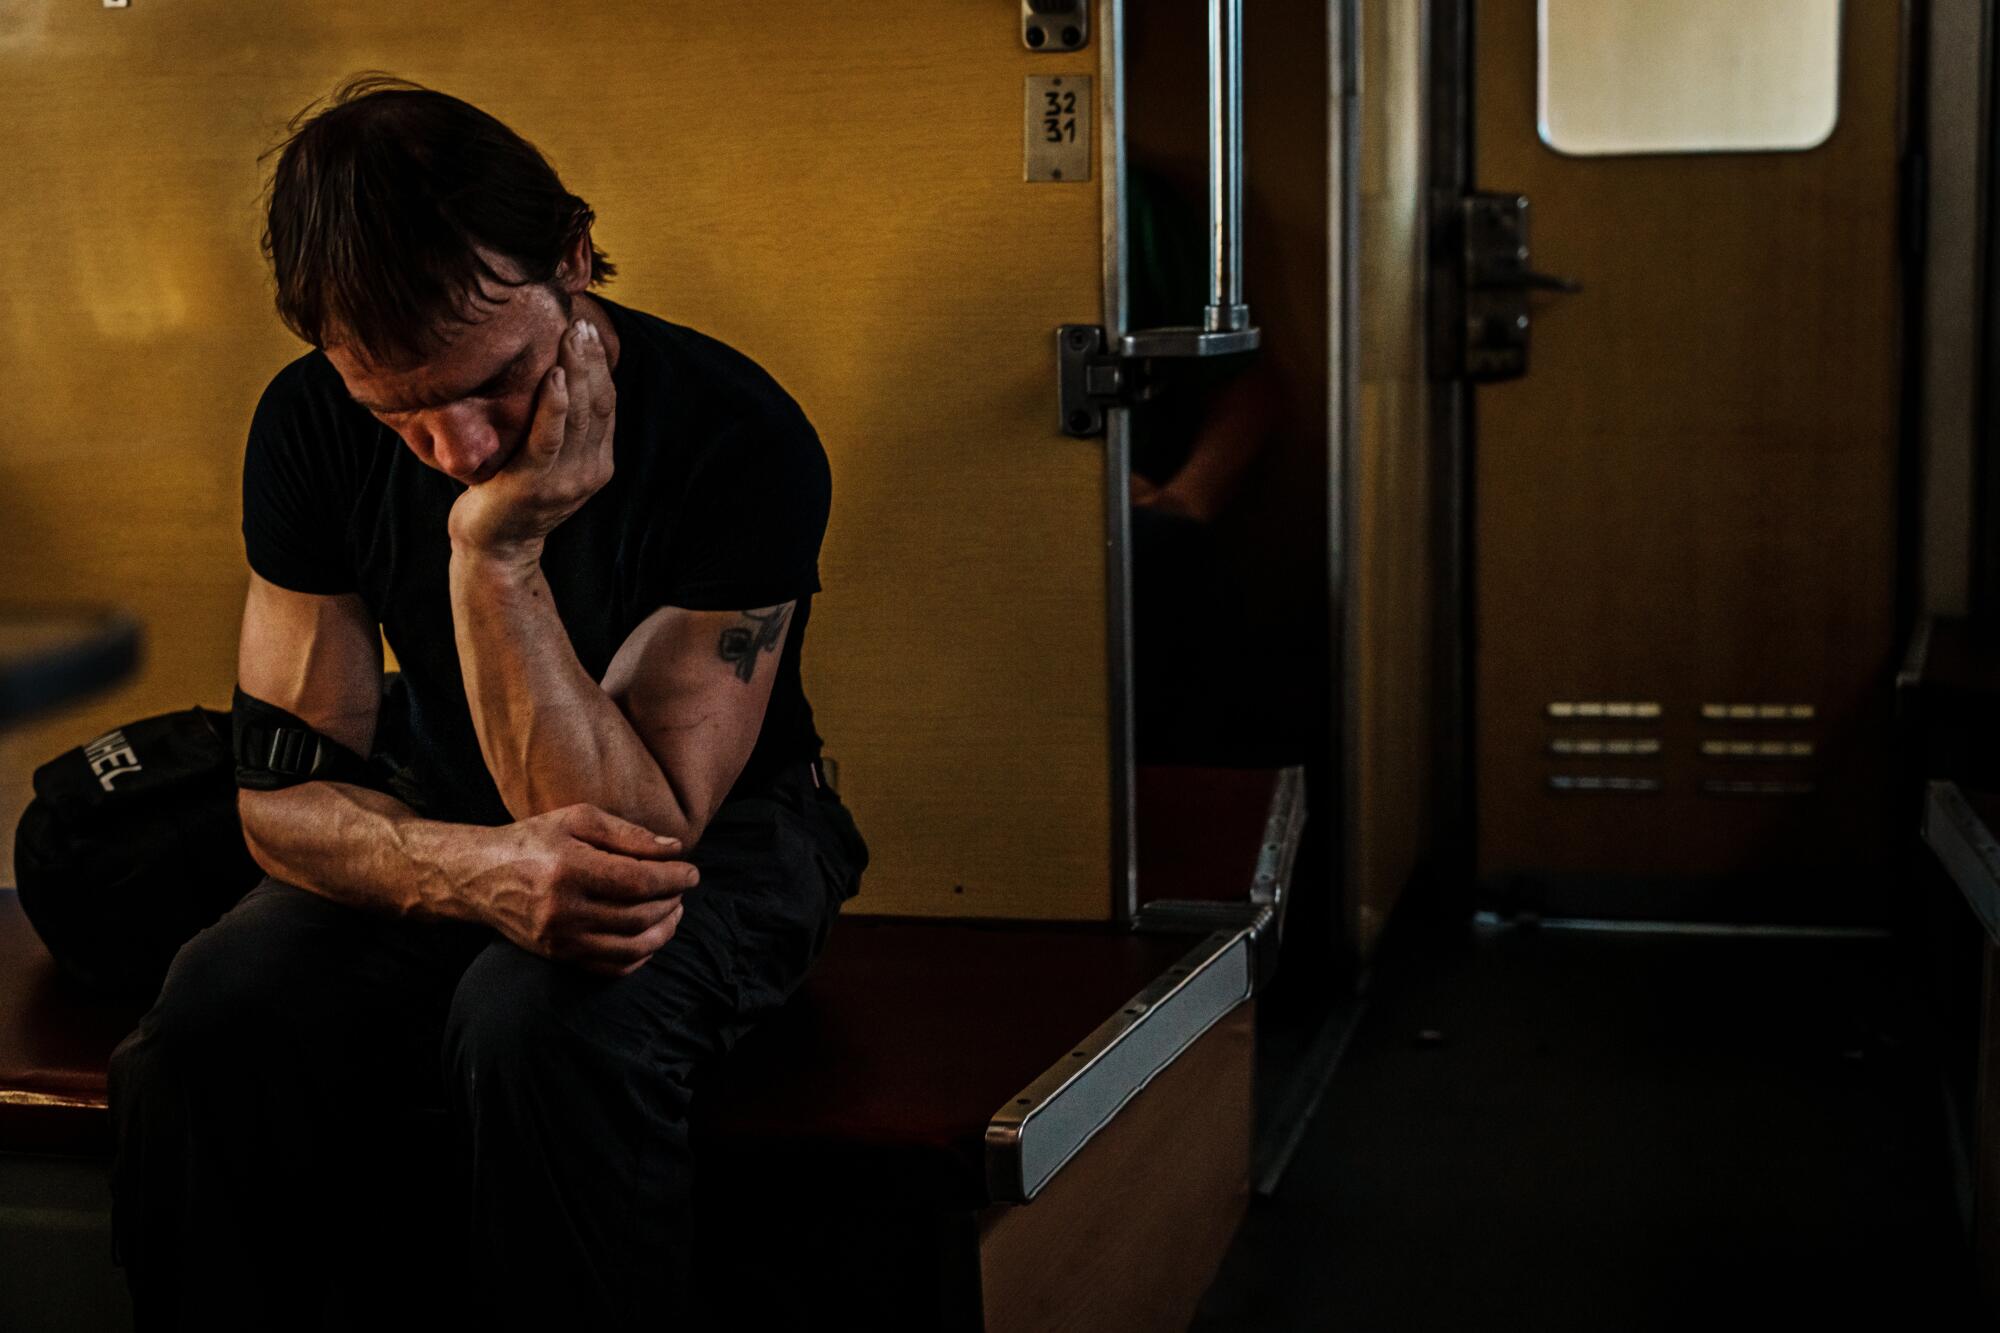 A man crouches on a train.